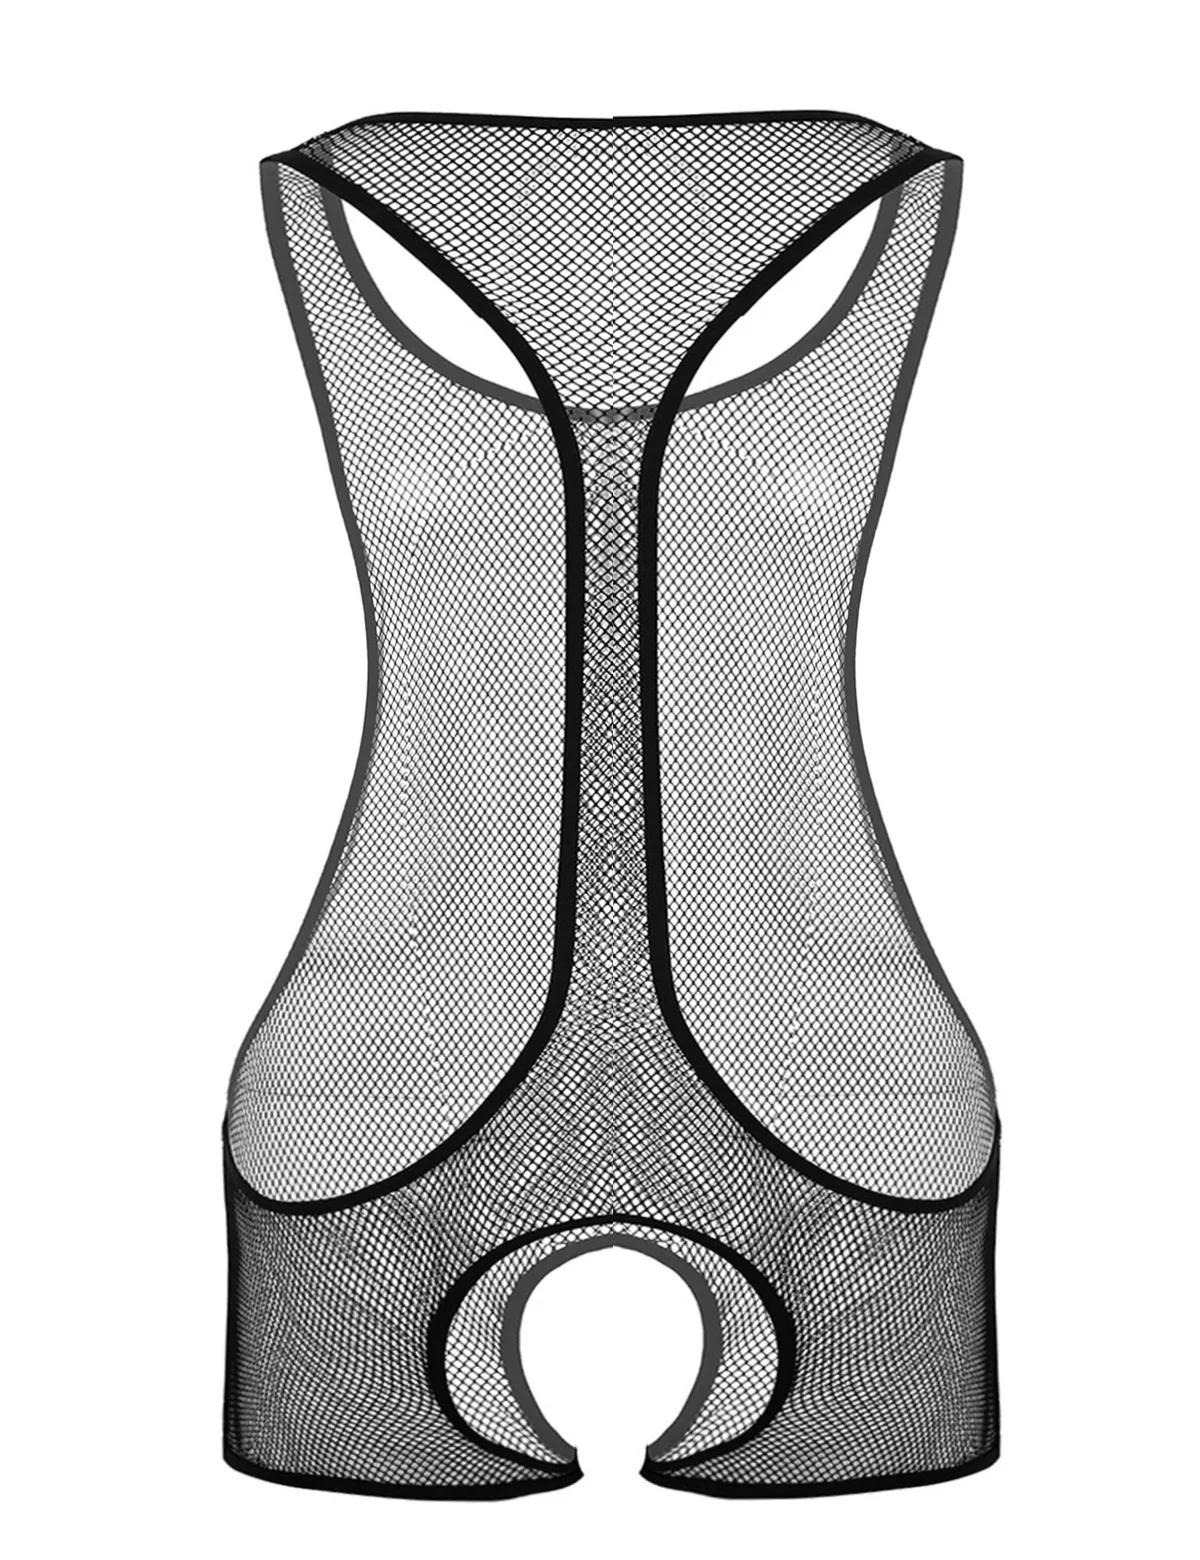 MSemis мужские экзотические цельные прозрачные боди прозрачная в крупную сетку без рукавов Scoop Neck Crotchless Open Crotch Комбинезон ночное белье